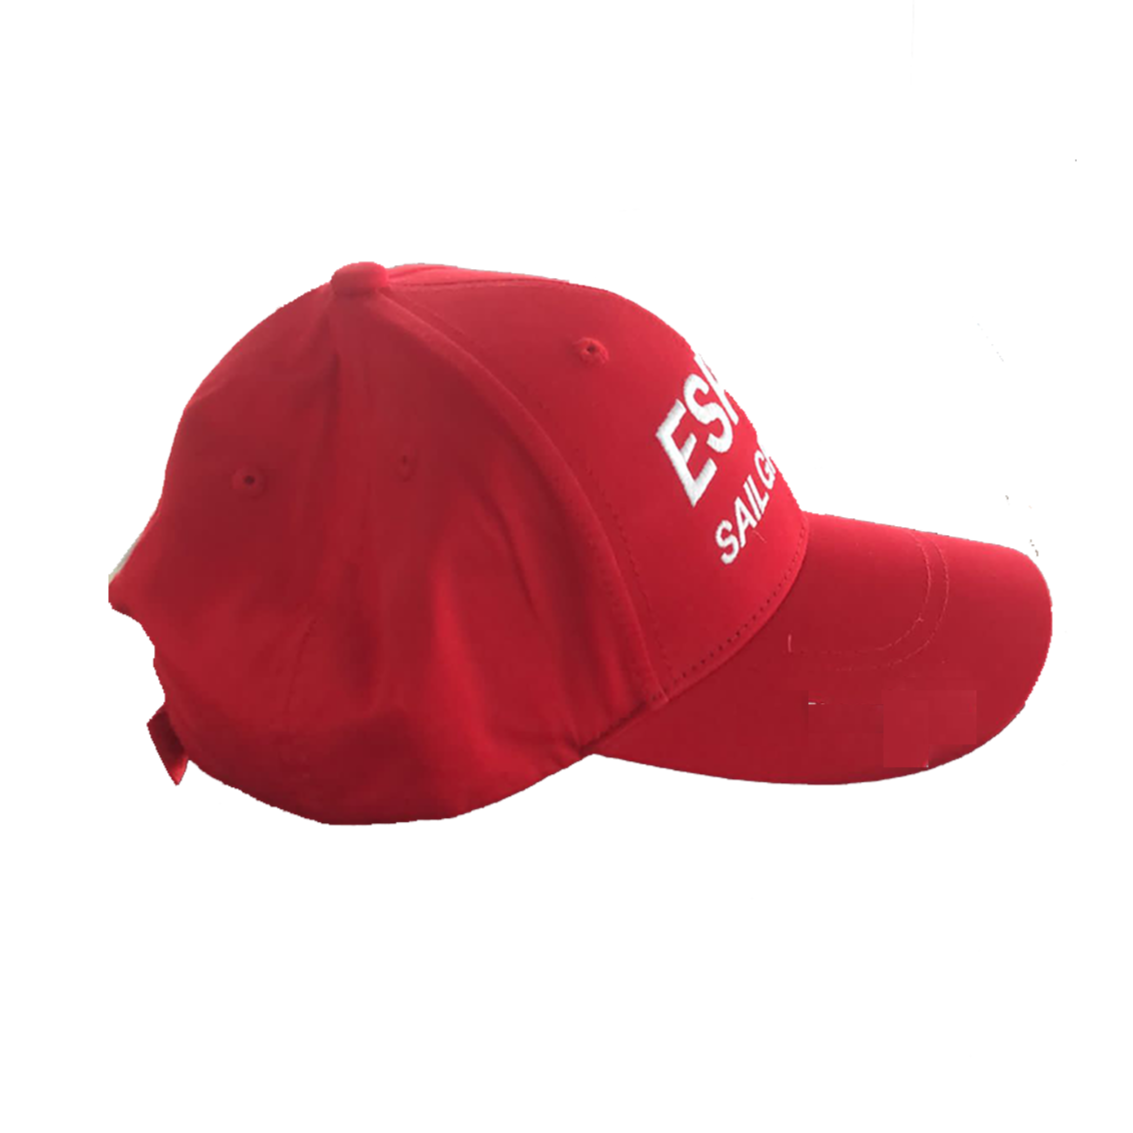 Team ESP Red Cap